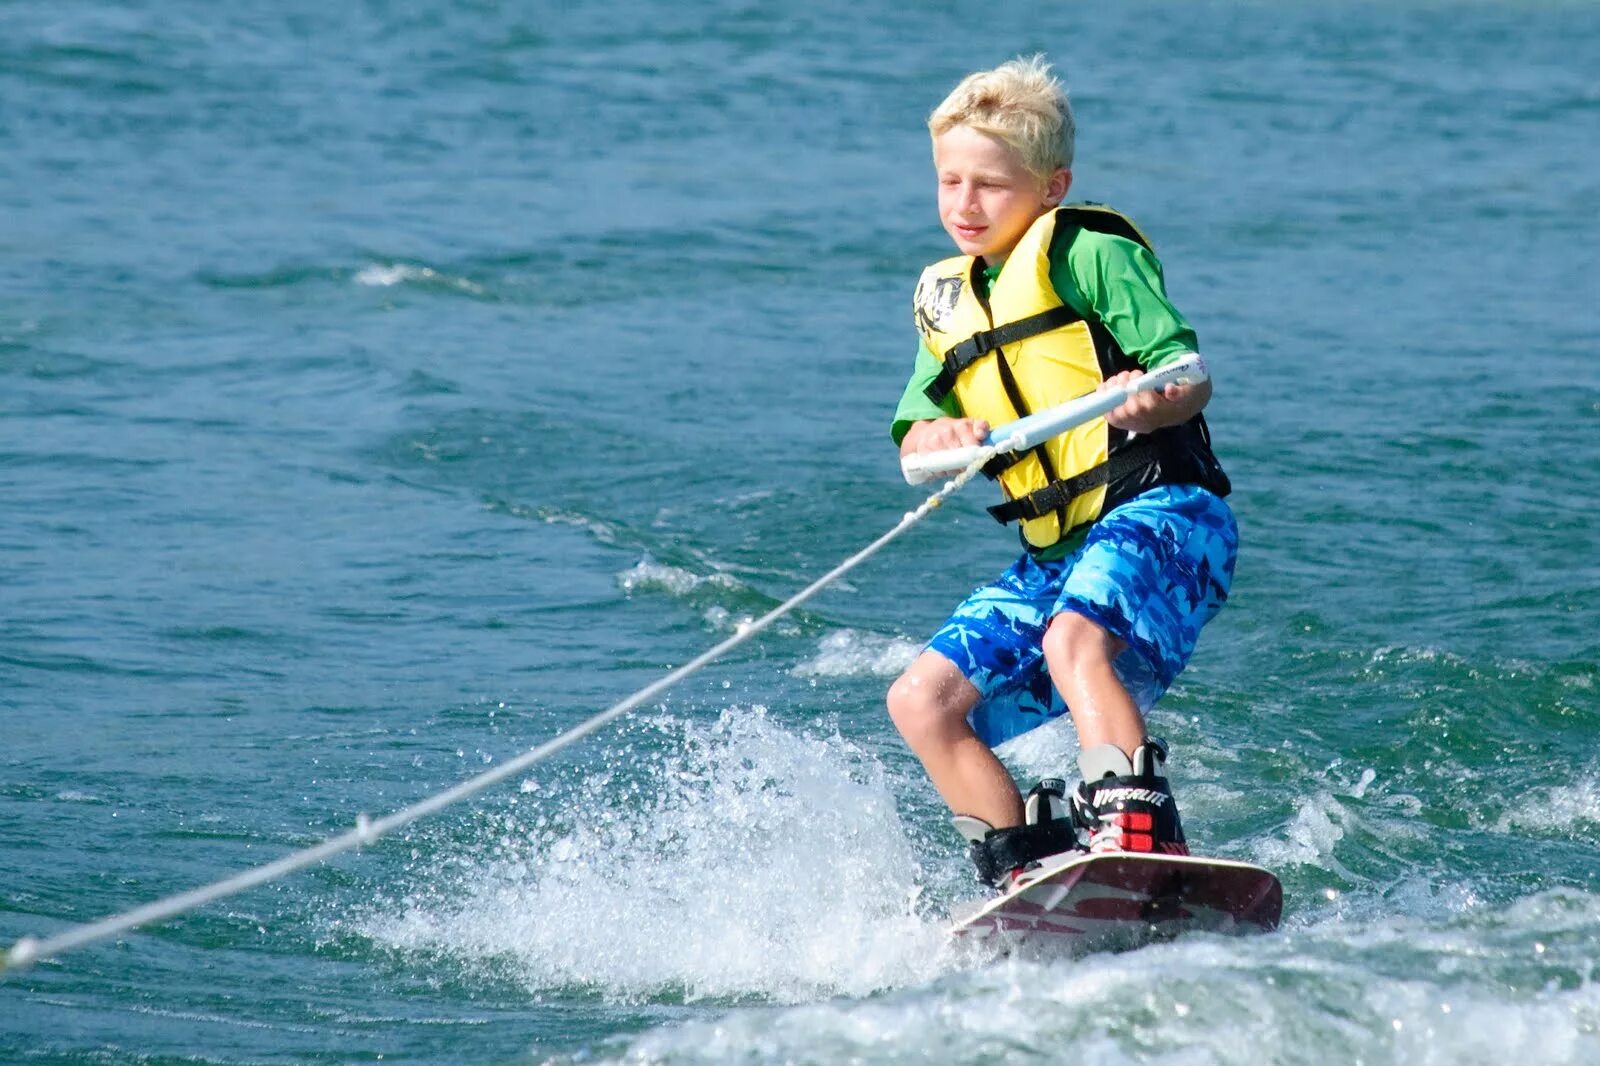 Водные виды спорта. Кататься на водных лыжах. Дети на водных лыжах. Доска для катания за катером.